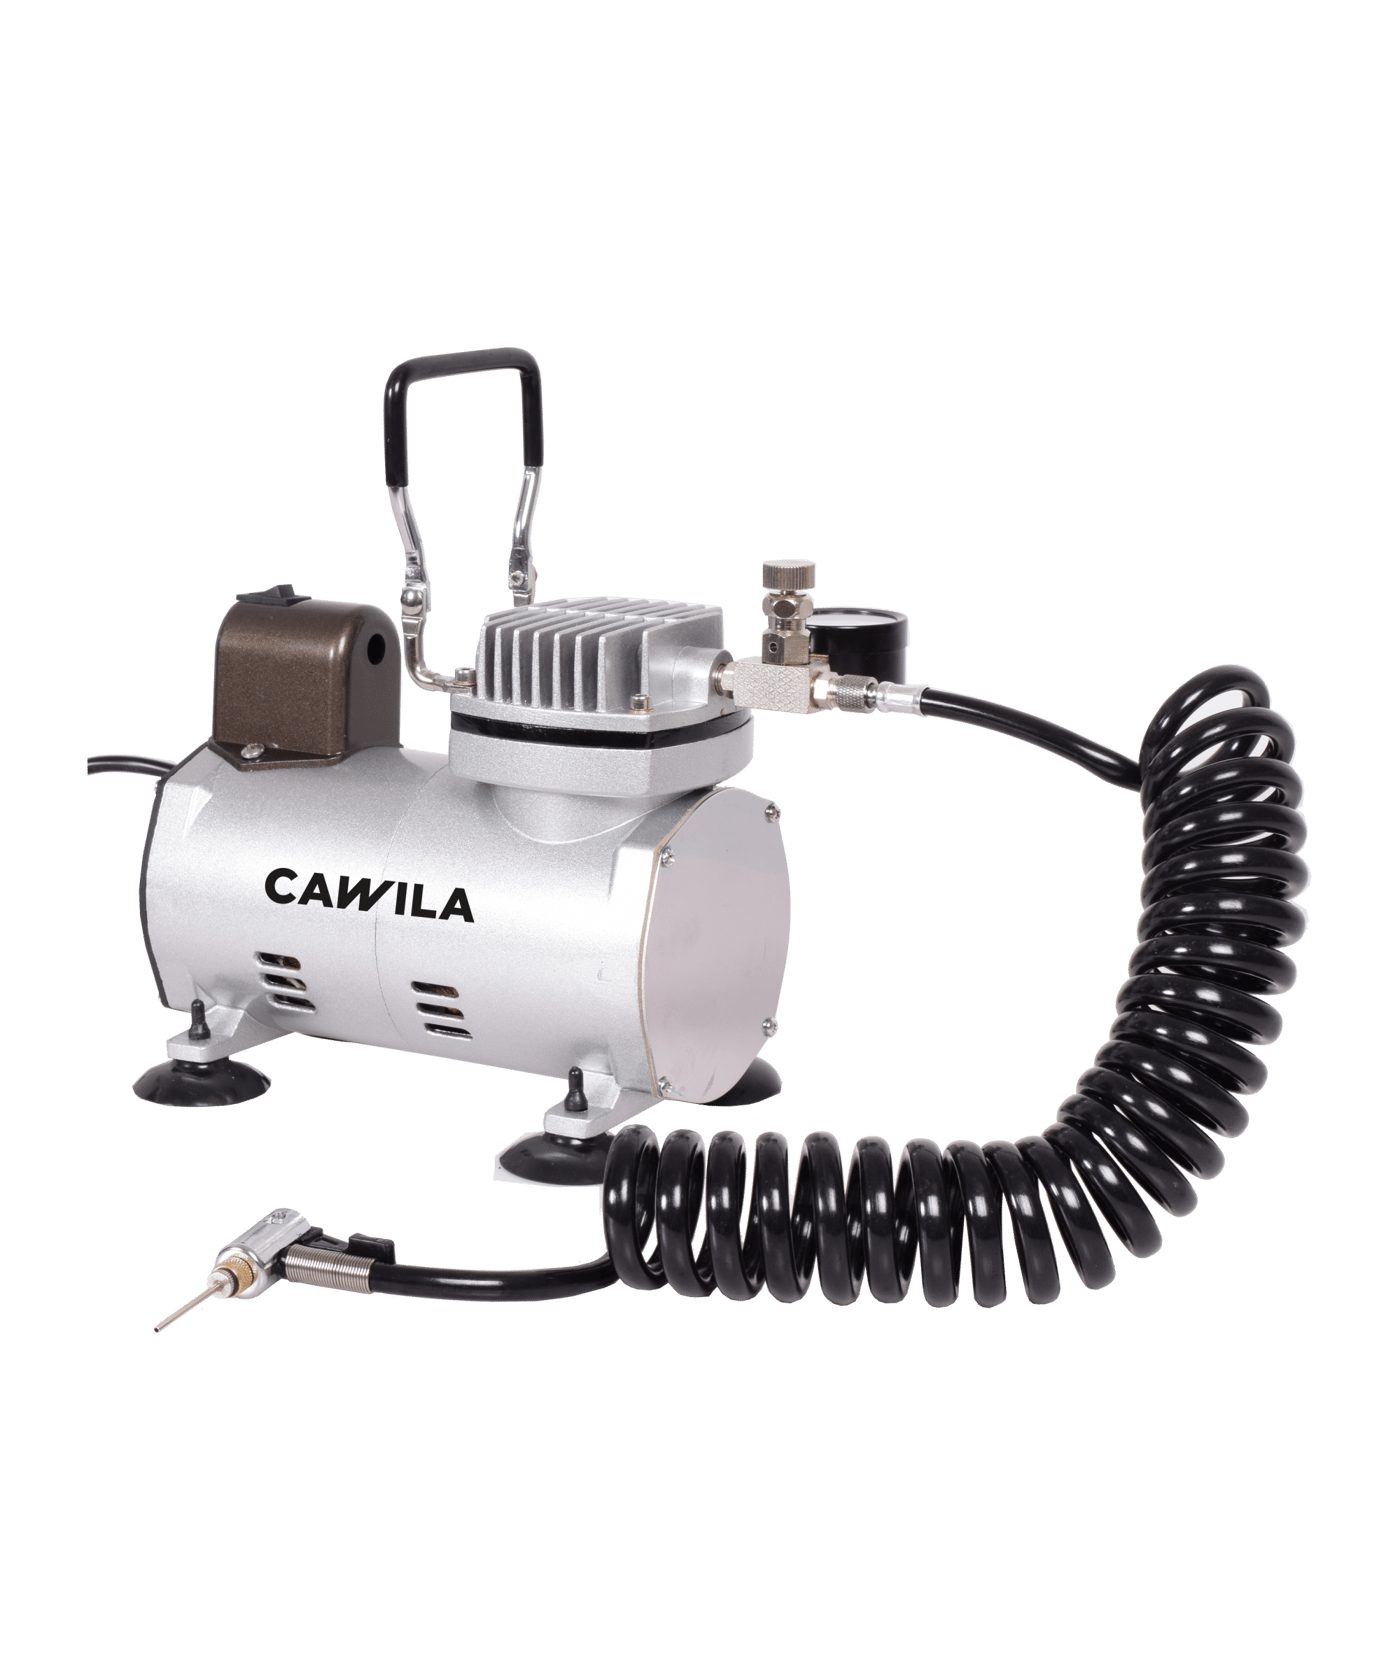 https://www.cawila.de/cdn-cgi/image/format=auto,width=1400/media/df/13/3d/1674052284/cawila-transportabler-kompressor-1000614276-equipment-front.png